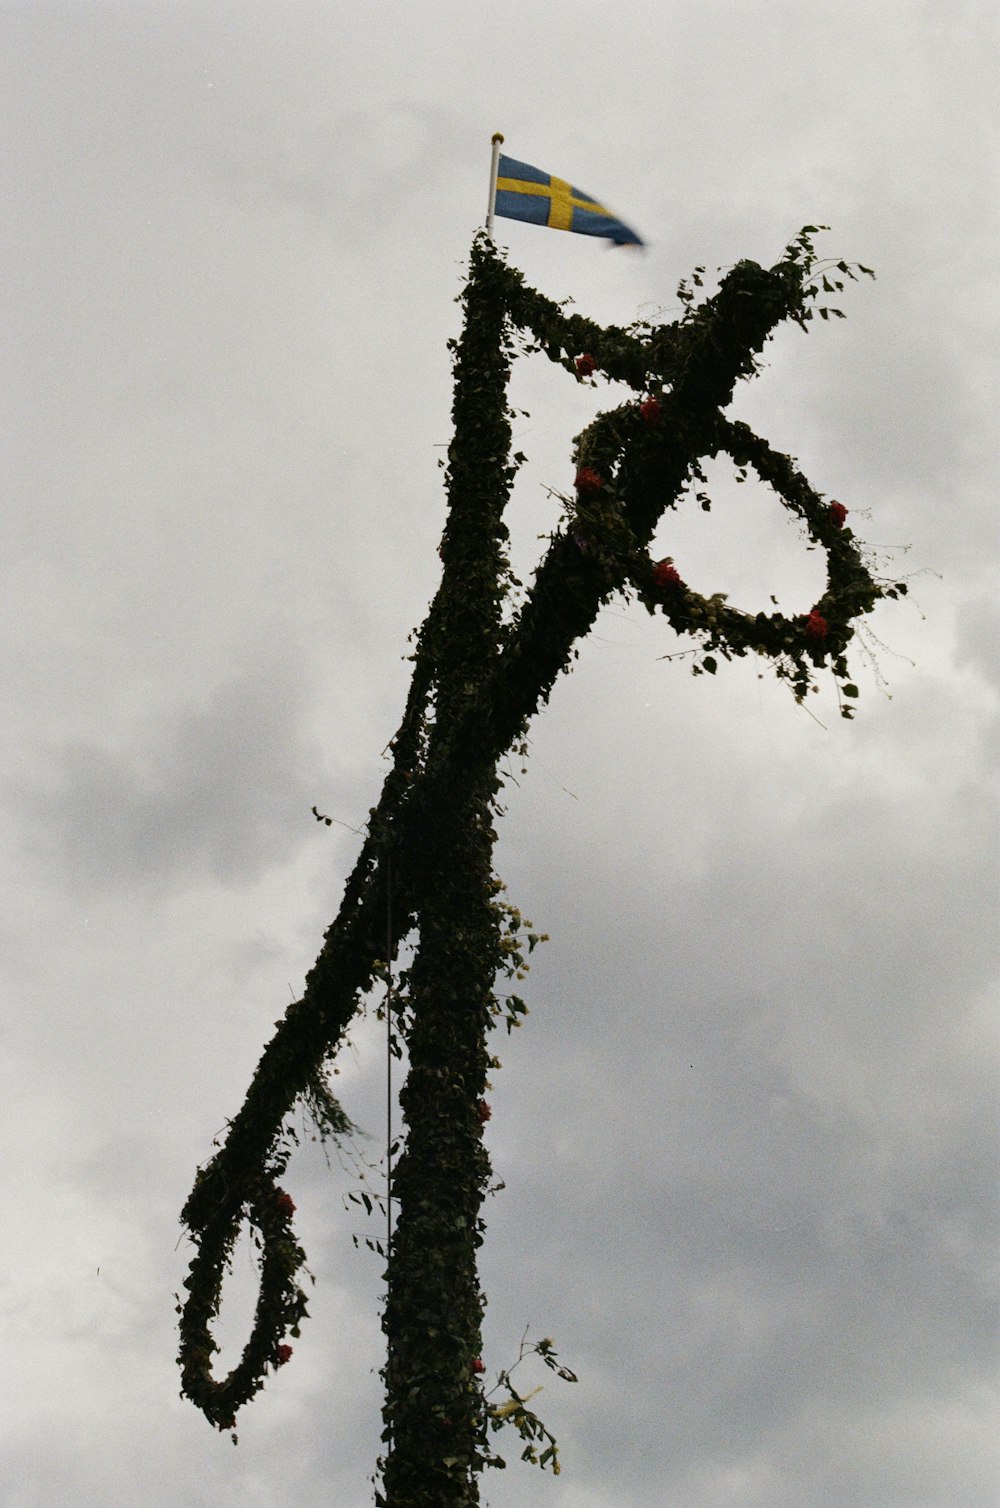 Photographie en contre-plongée d’un arbre noir et rouge sous des nuages blancs